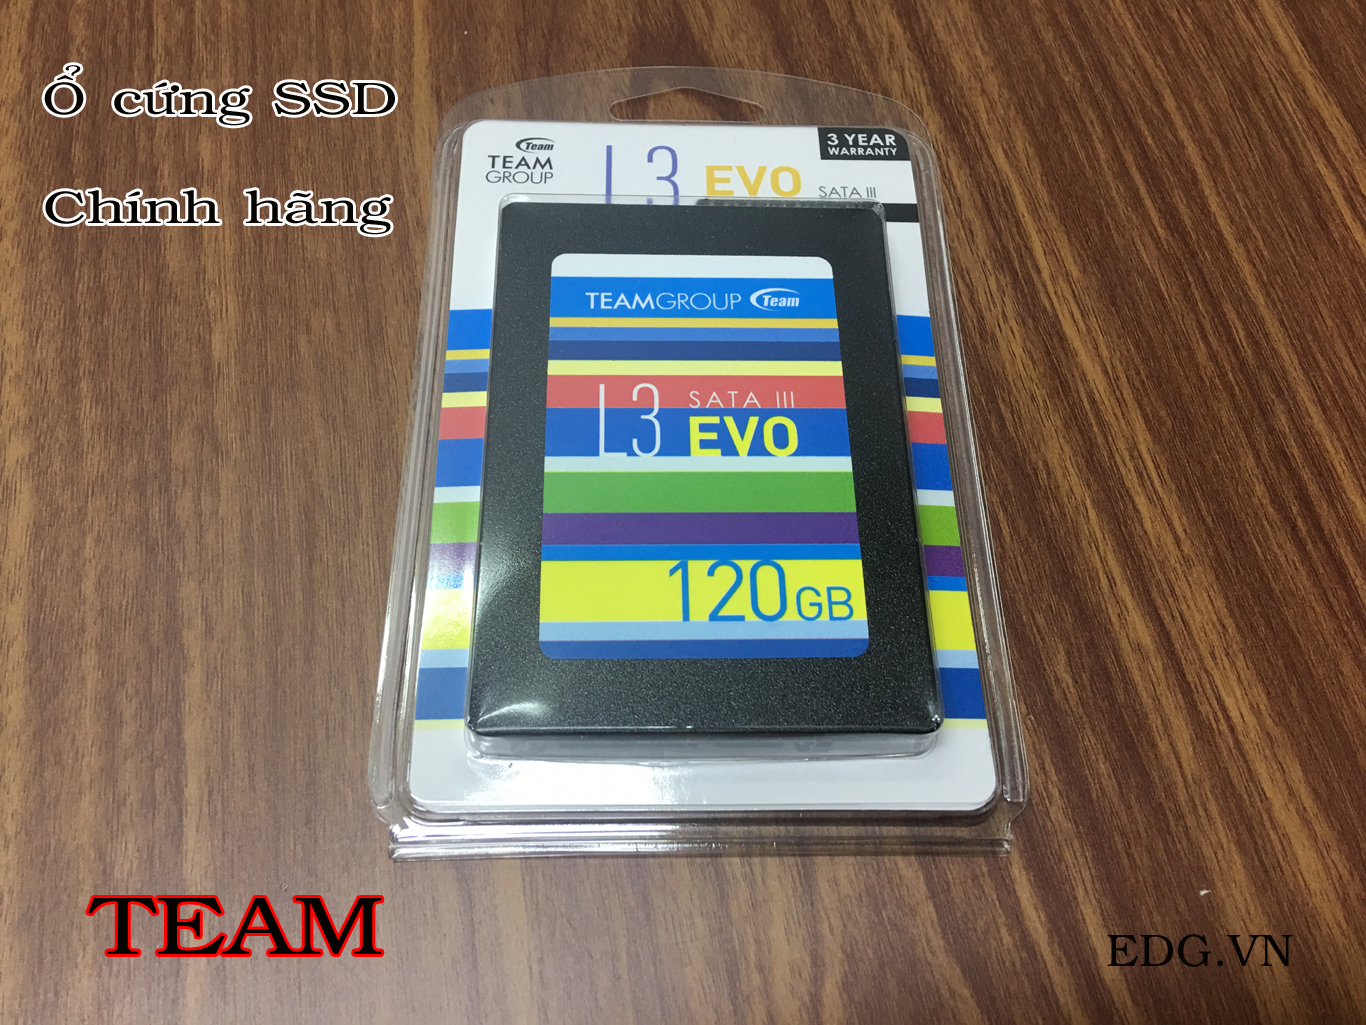 Ổ cứng SSD 120GB L3-EVO chính hãng TEAM – EDG.VN